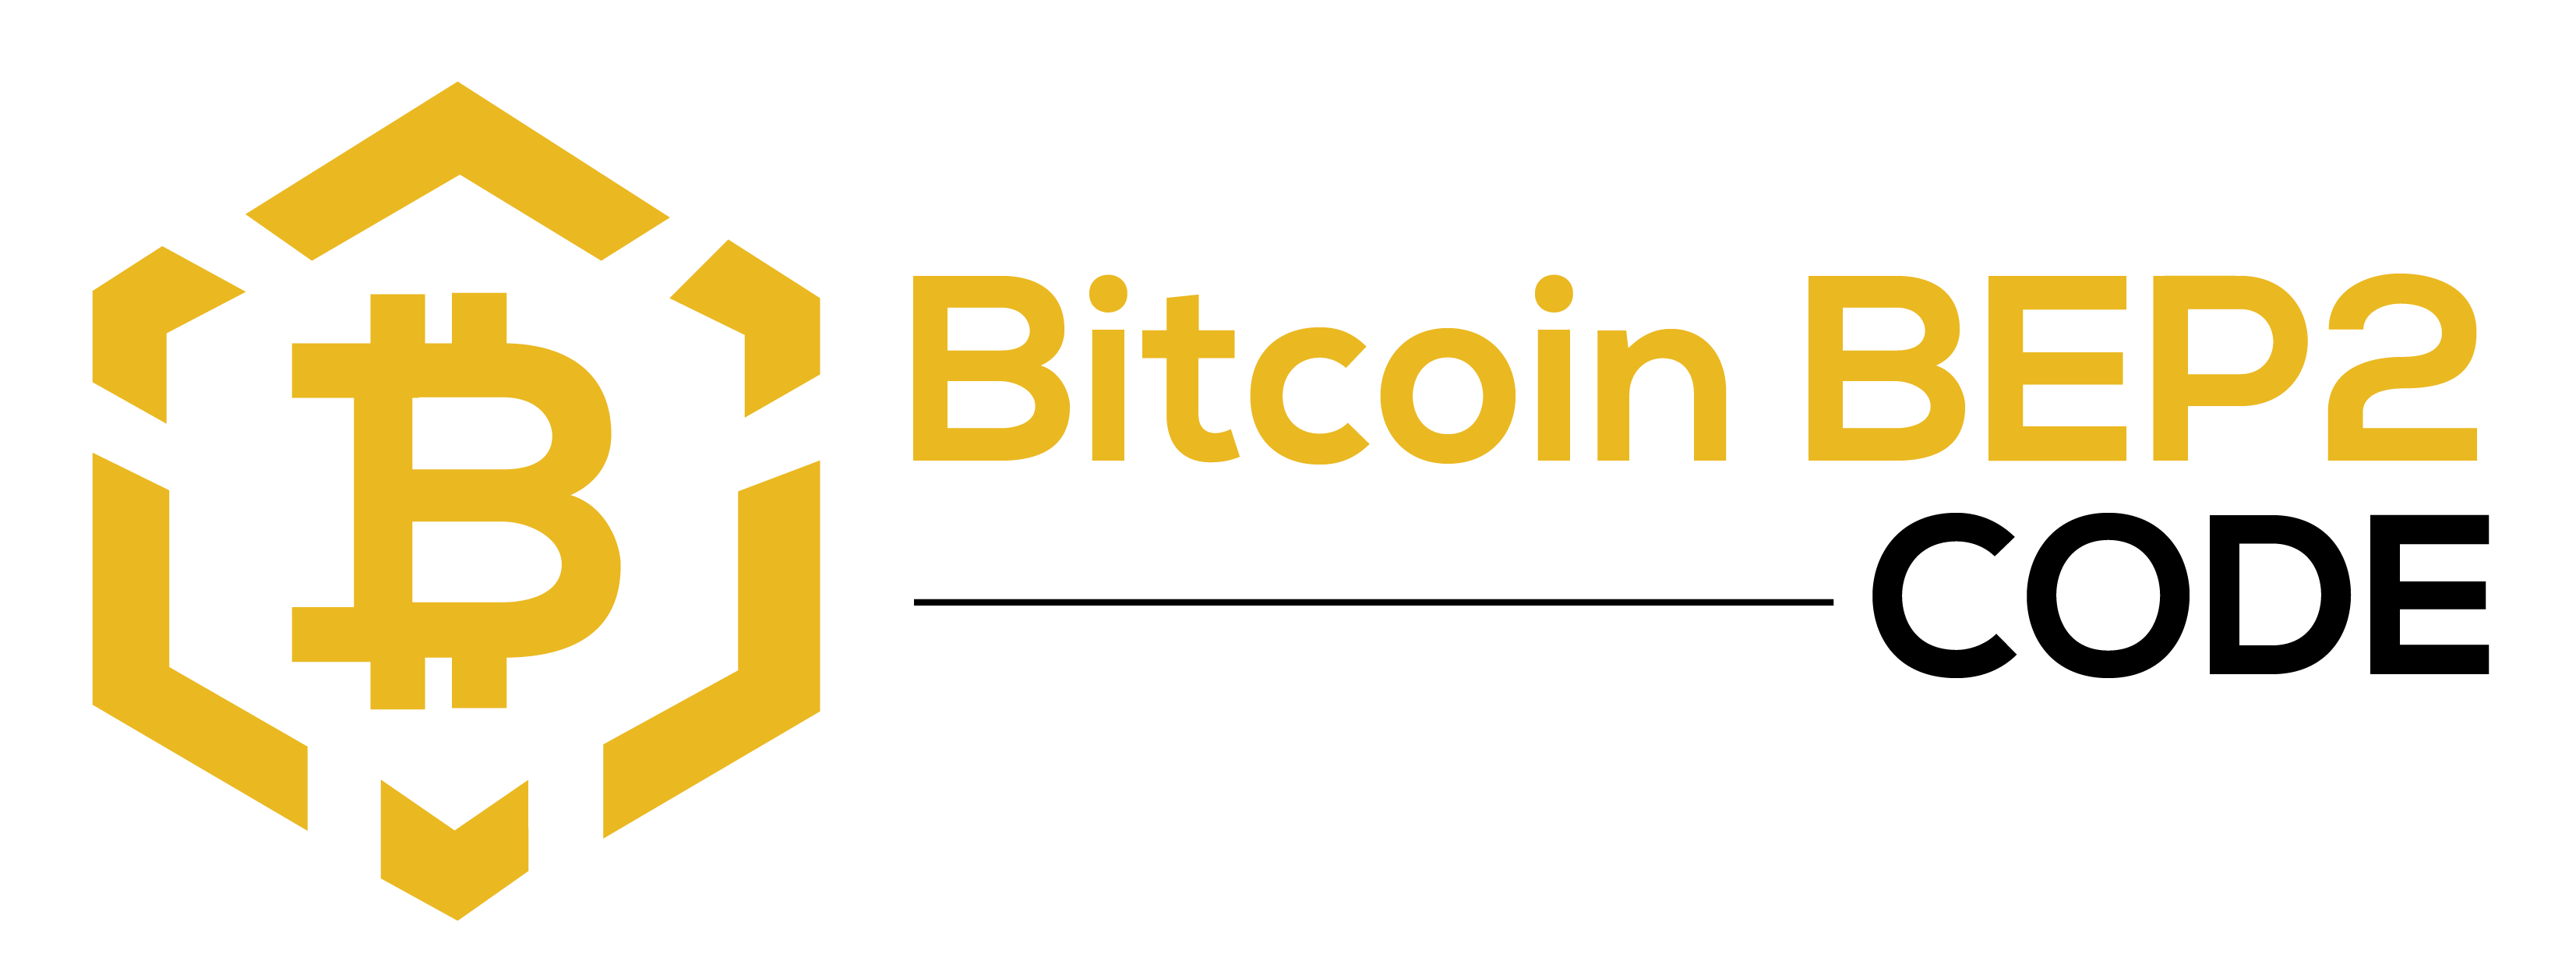 Bitcoin BEP2 Code - Zespół Bitcoin BEP2 Code